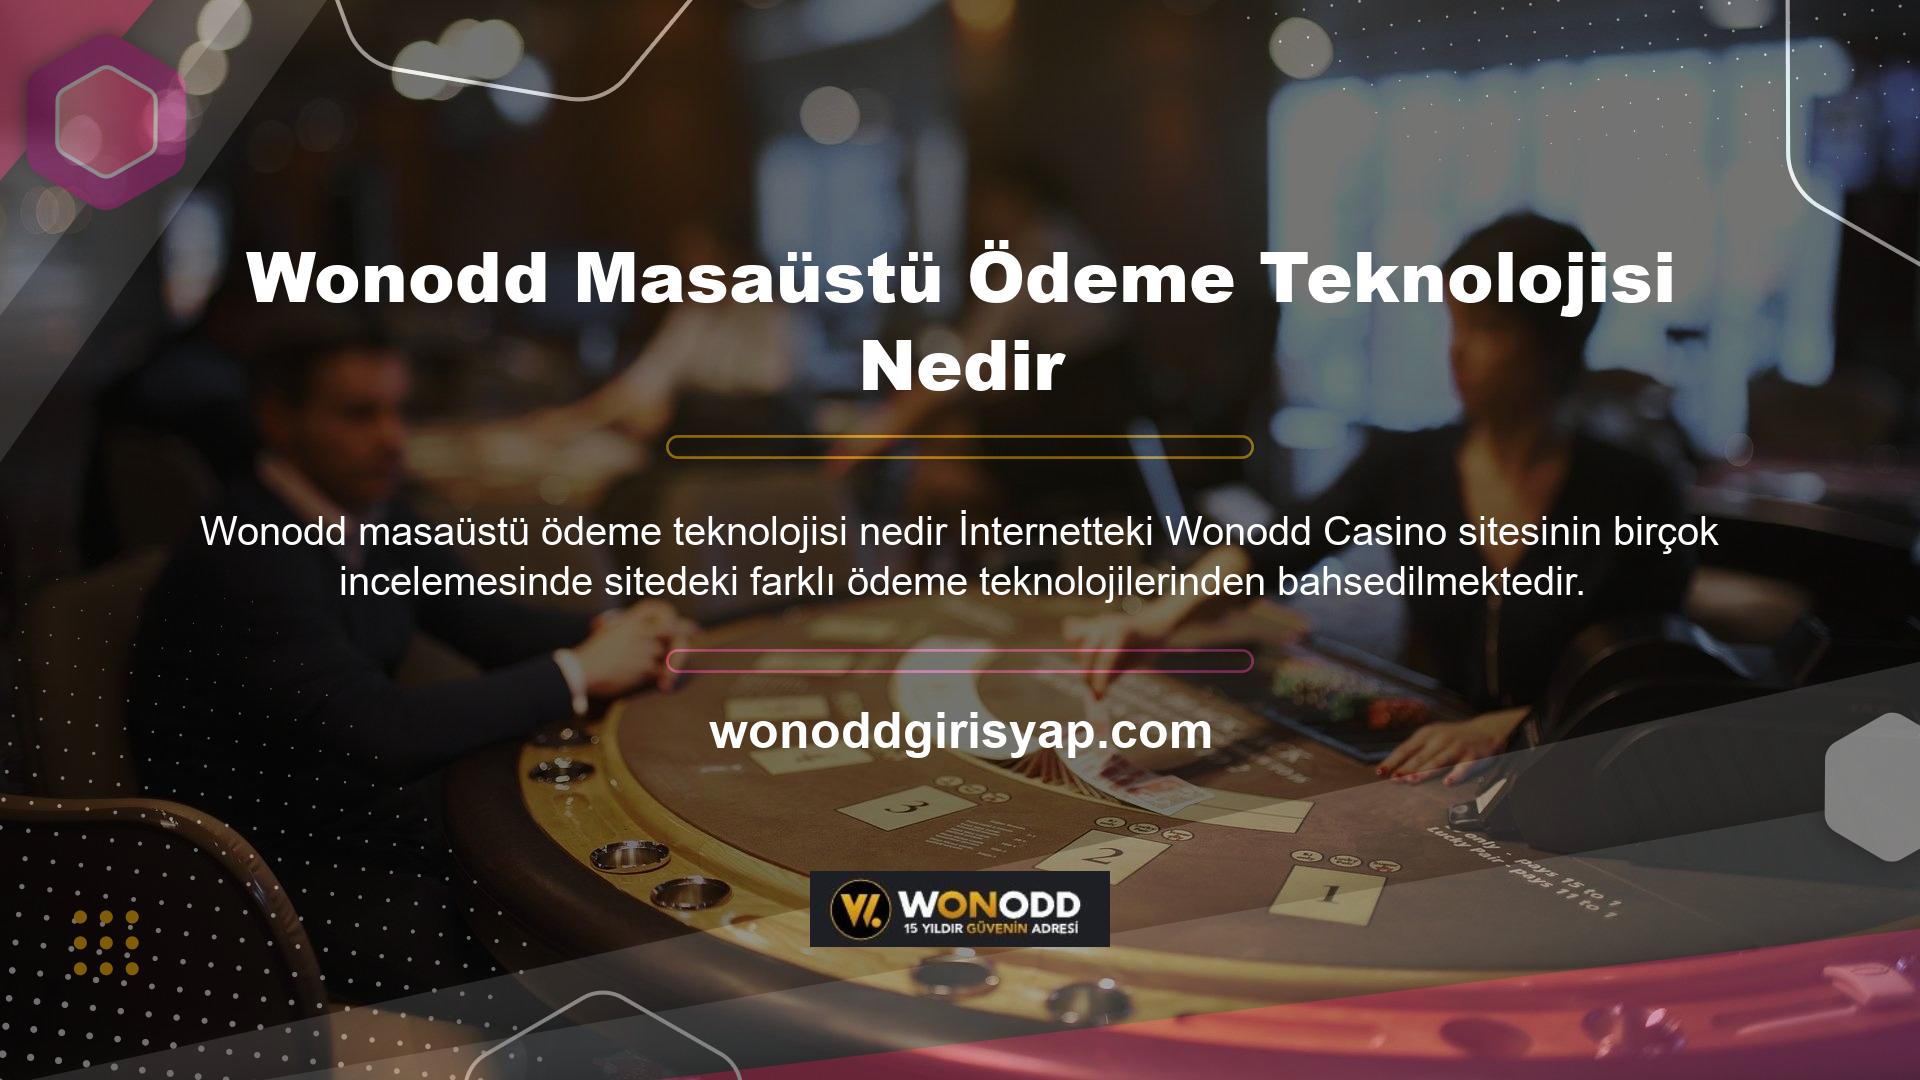 Ödeme teknolojisi ile ilgili geri bildirimler sayesinde sitenin güvenilirliği artmış ve çeşitli ödeme teknolojilerini kullanan kullanıcılar Wonodd online casino sitesine karşı olumlu bir tavırla sisteme dahil olmaktadır